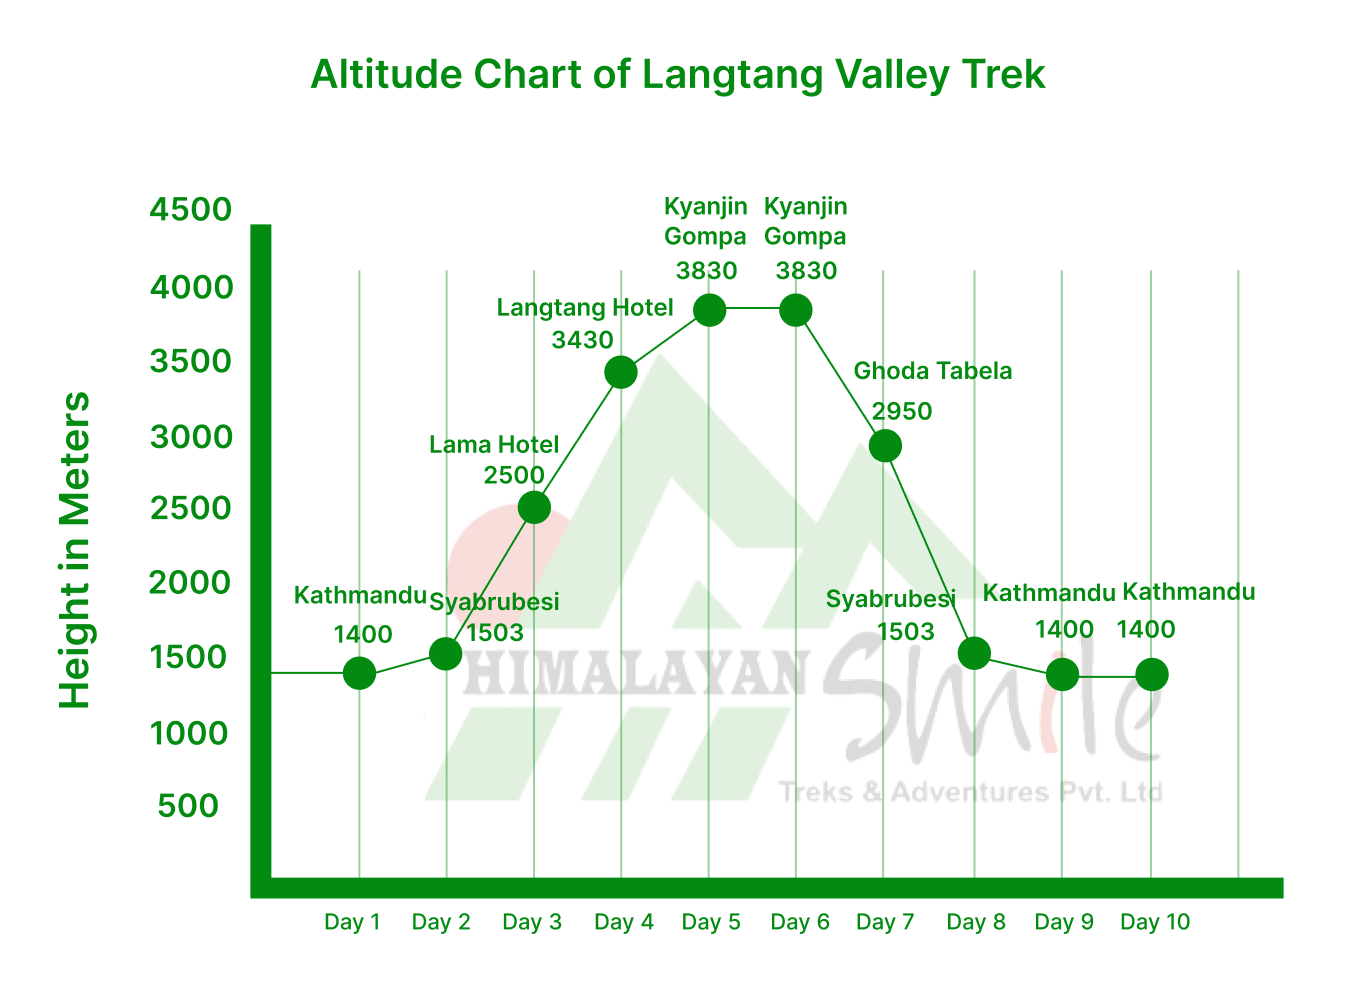 Langtang Valley Trekking Altitude chart